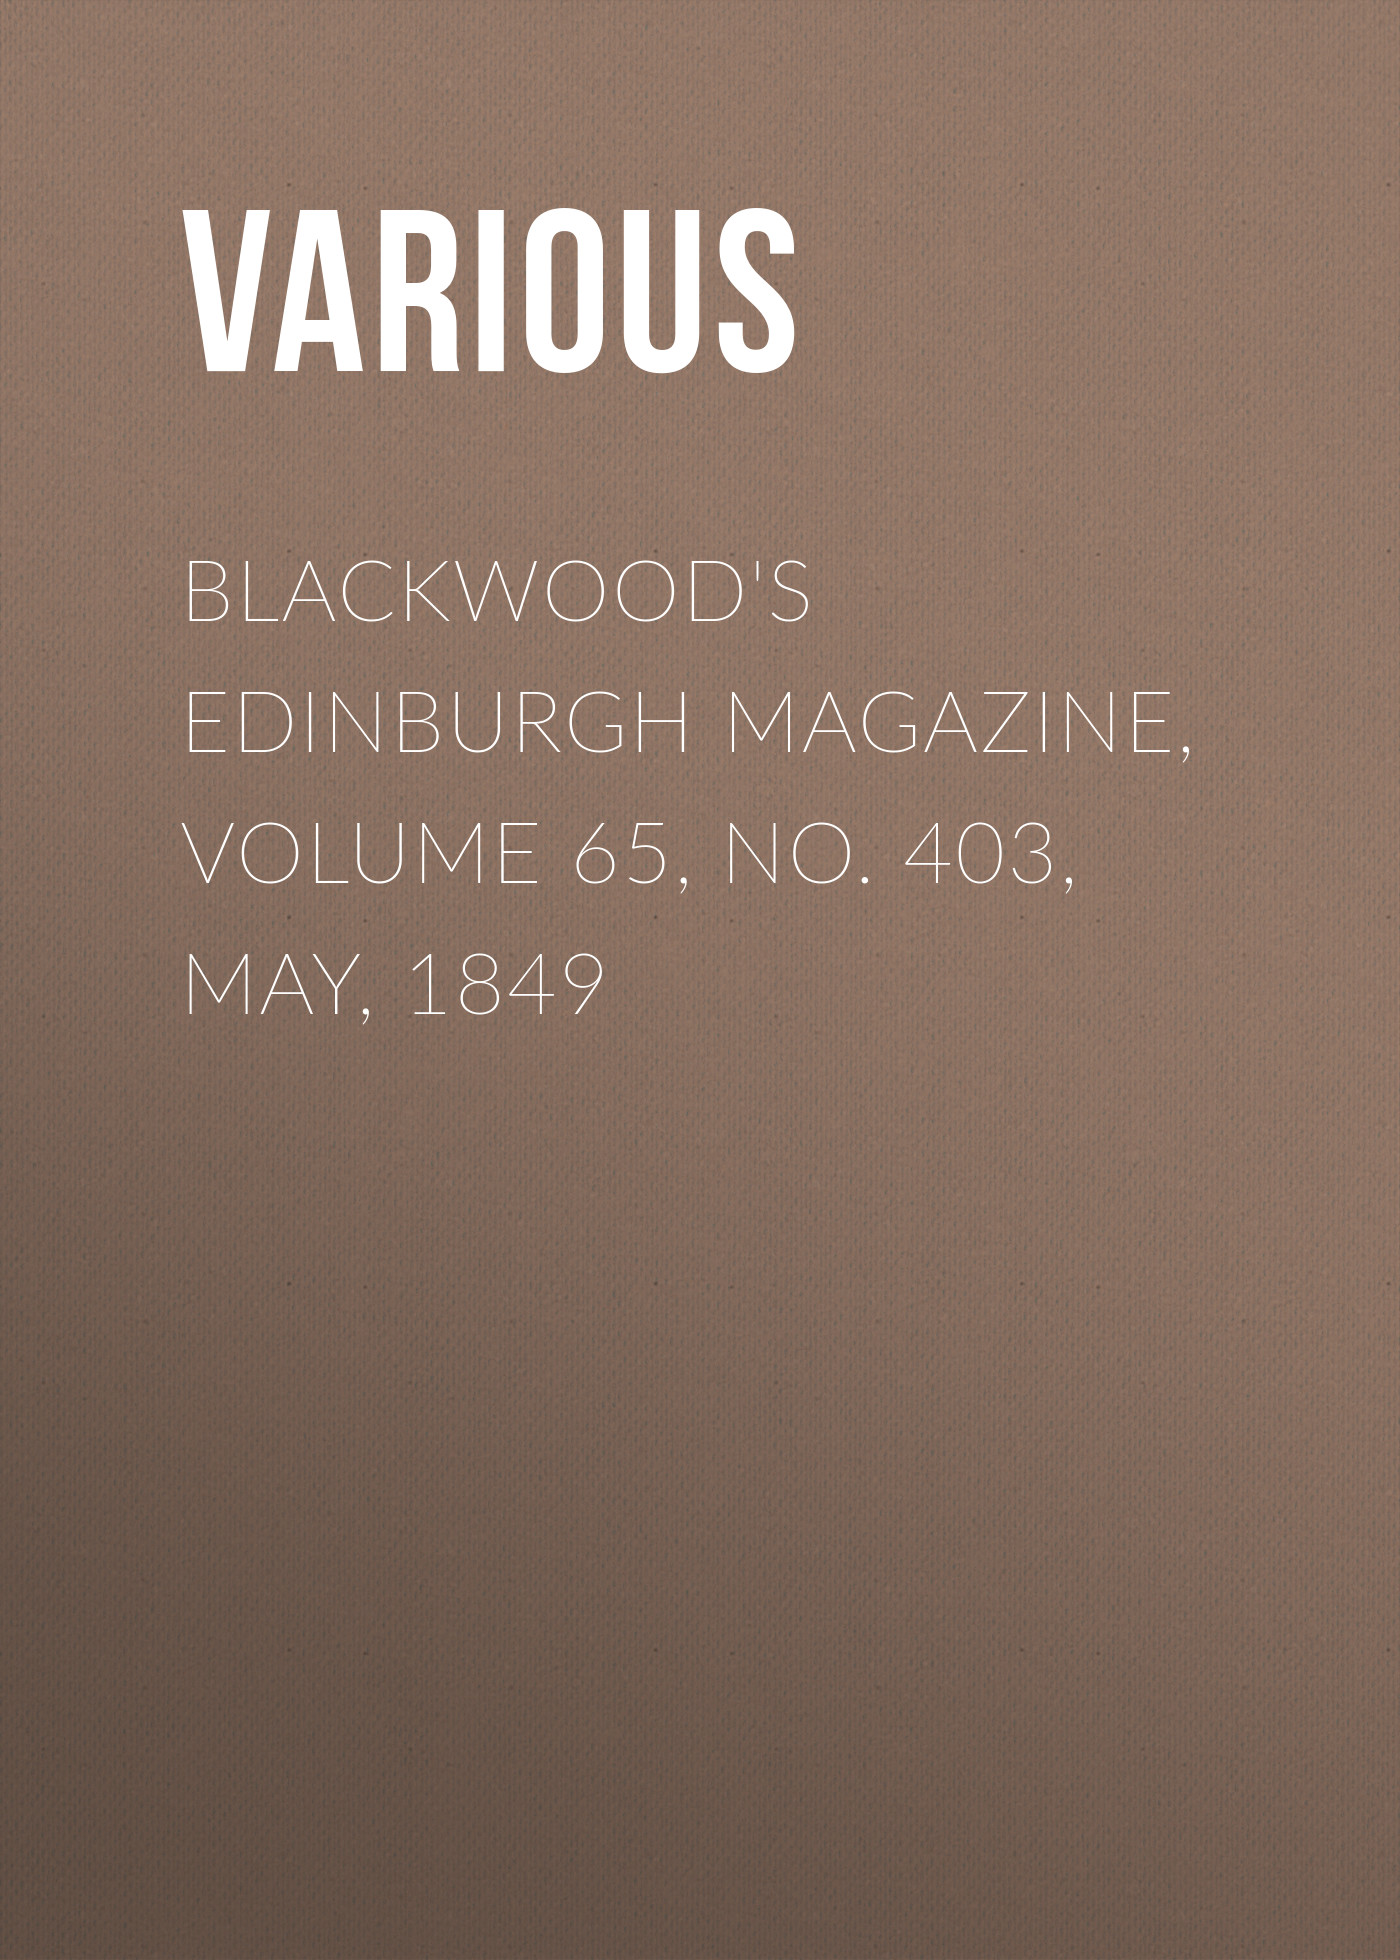 Книга Blackwood's Edinburgh Magazine, Volume 65, No. 403, May, 1849 из серии , созданная  Various, может относится к жанру Журналы, Зарубежная образовательная литература, Книги о Путешествиях. Стоимость электронной книги Blackwood's Edinburgh Magazine, Volume 65, No. 403, May, 1849 с идентификатором 25569543 составляет 0 руб.